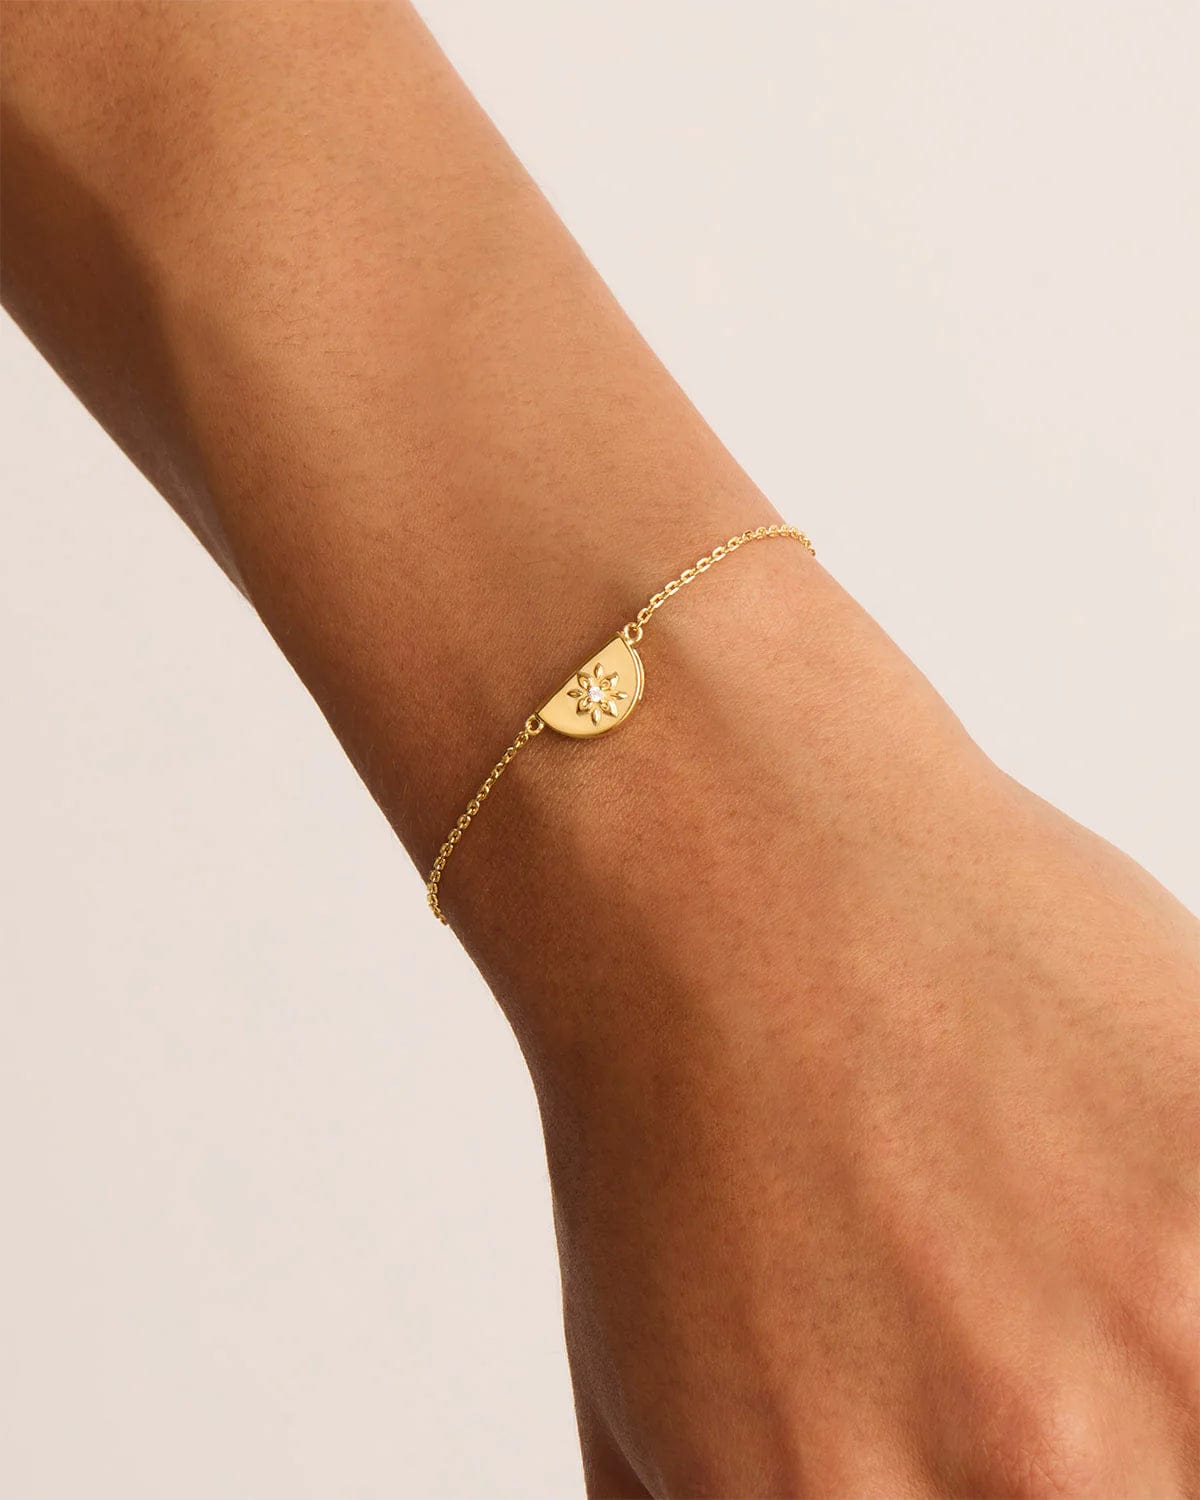 By Charlotte Bracelets By Charlotte | Lotus Bracelet - 18k Gold Vermeil